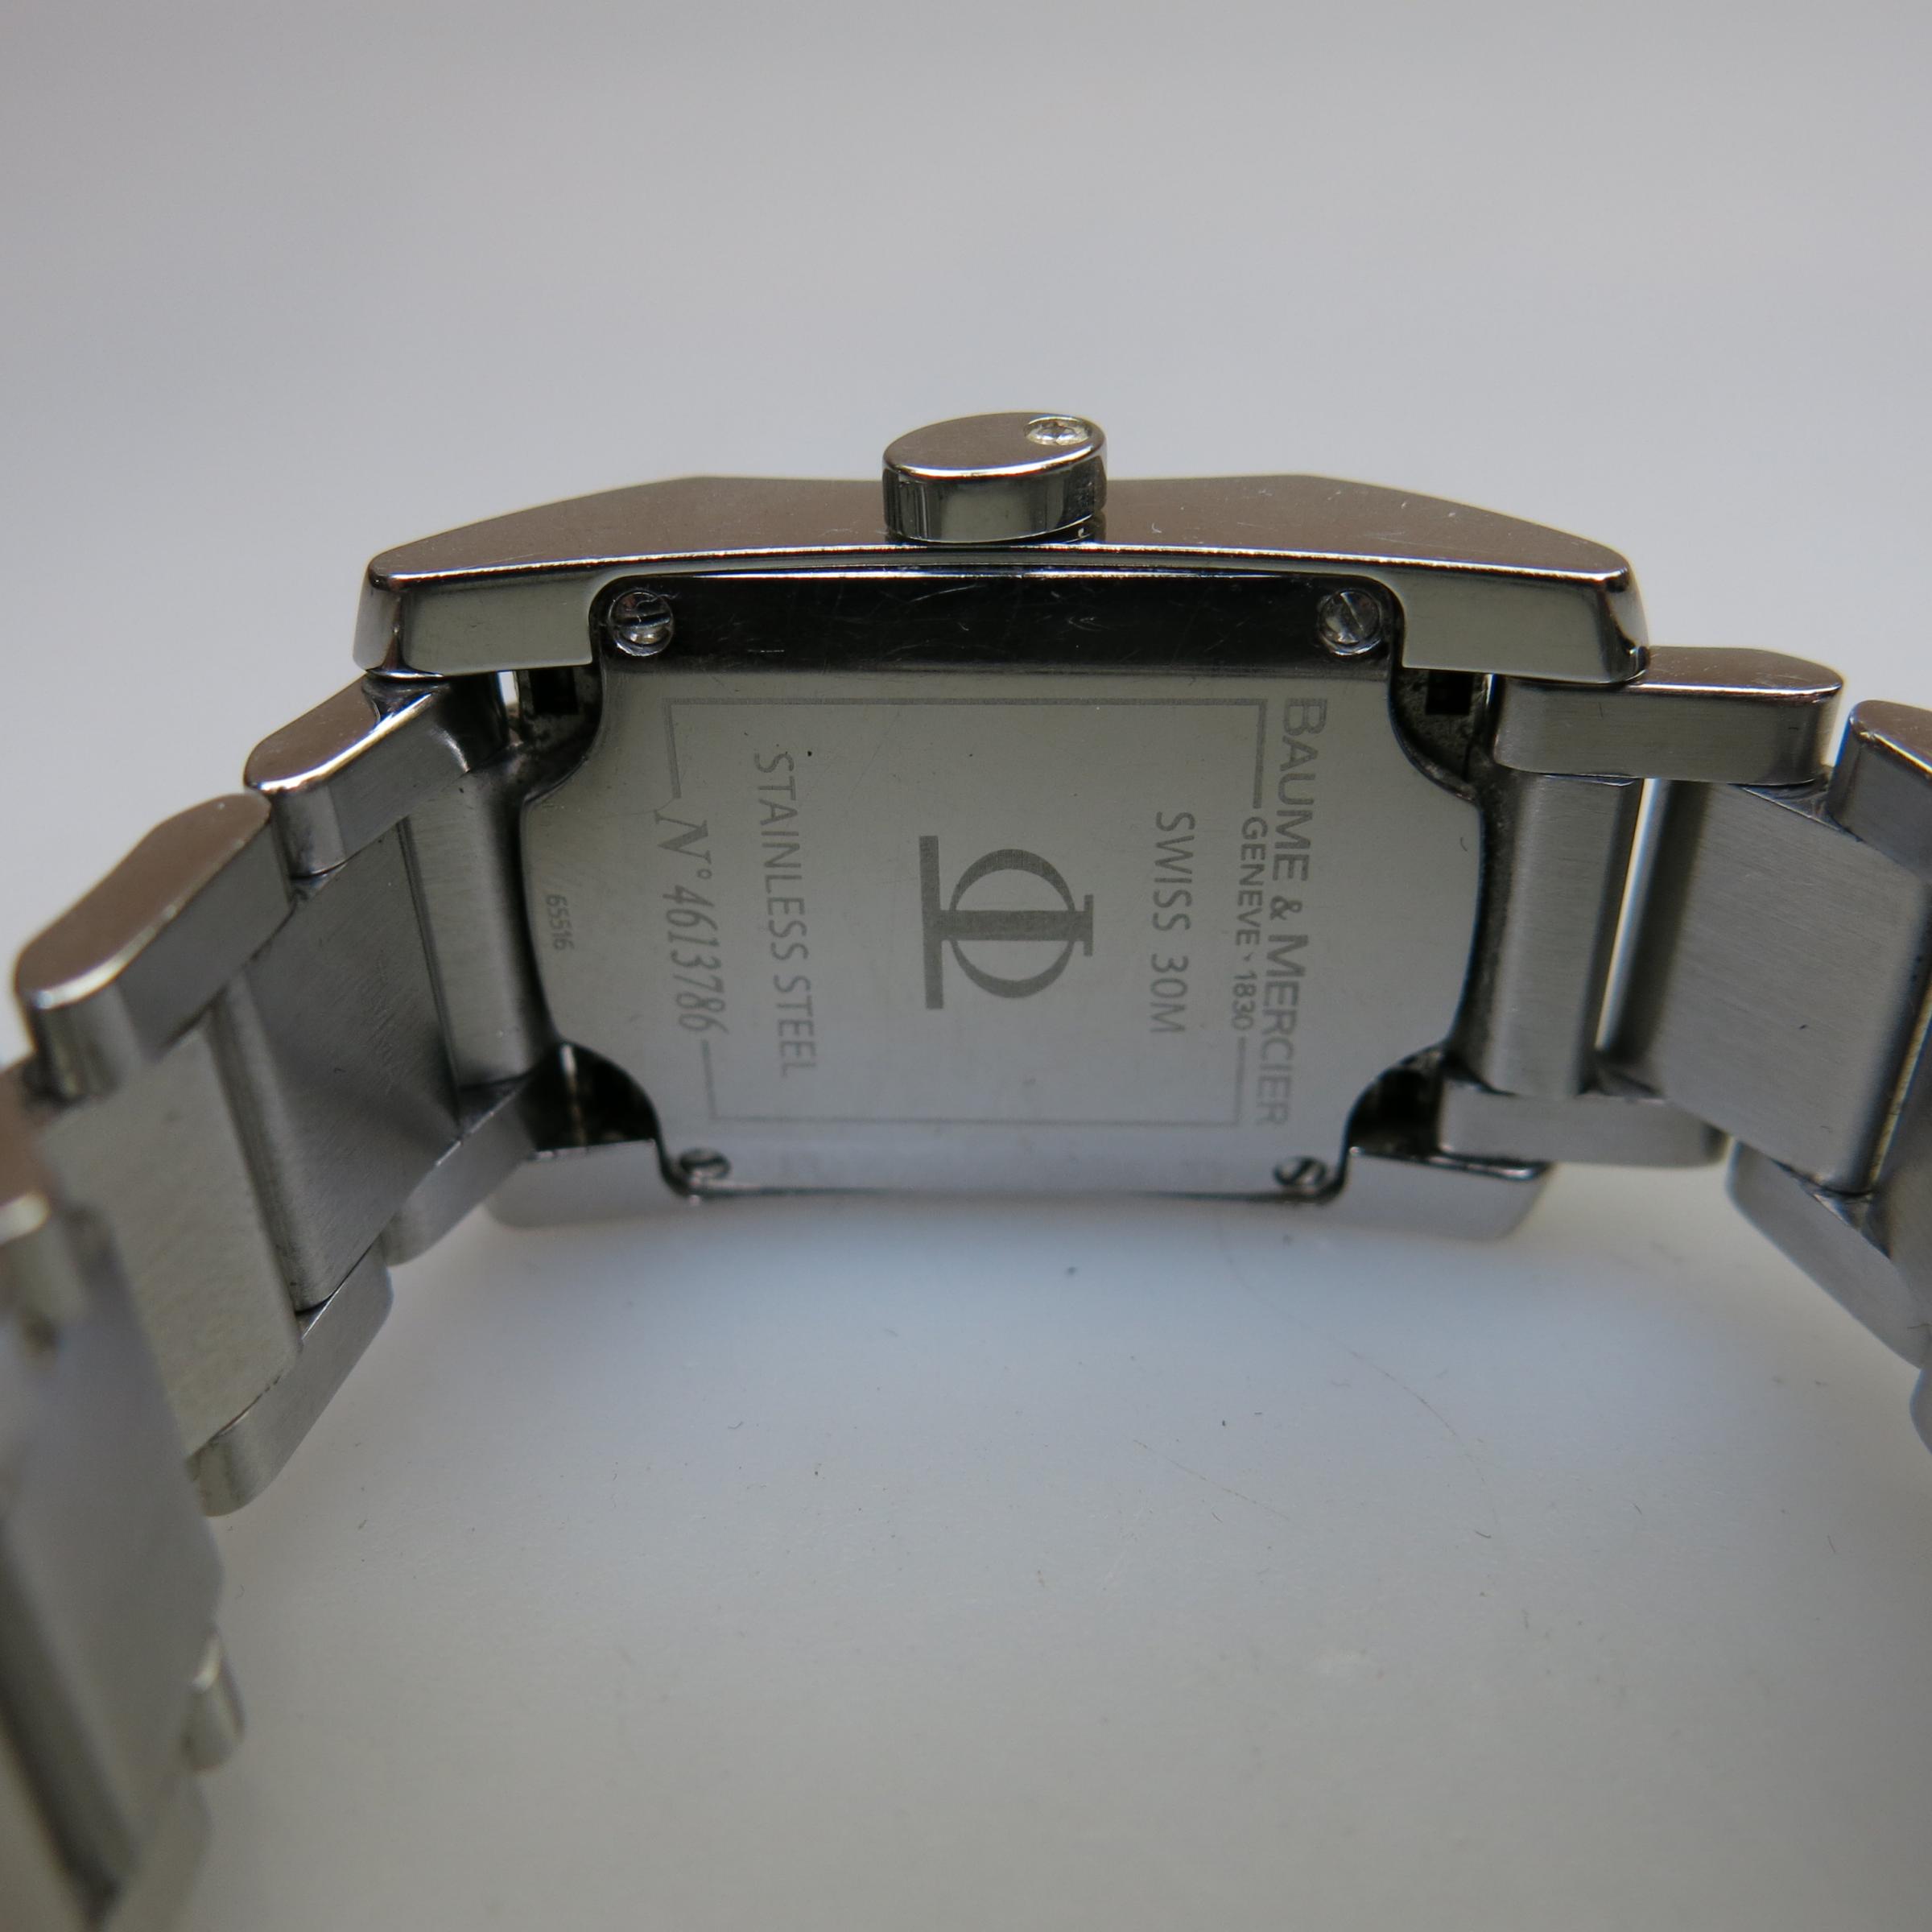 Lady's Baume & Mercier Hampton Wristwatch, With Date